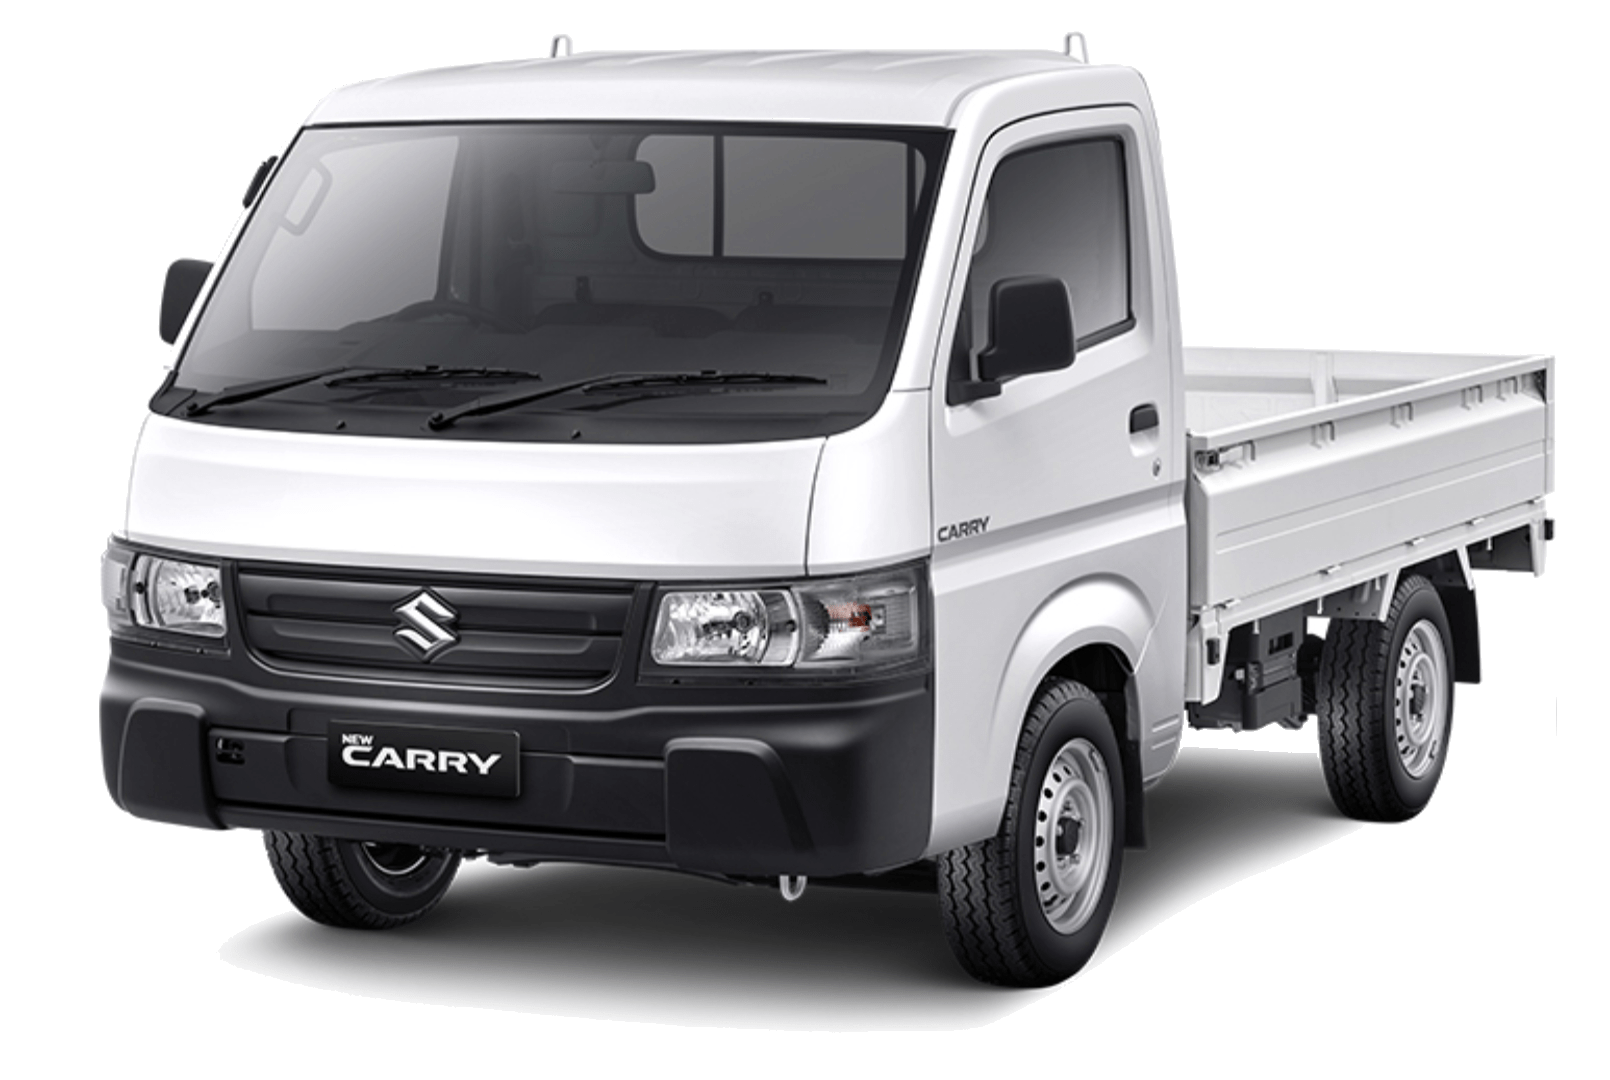 Suzuki bandung - new carry white 2021